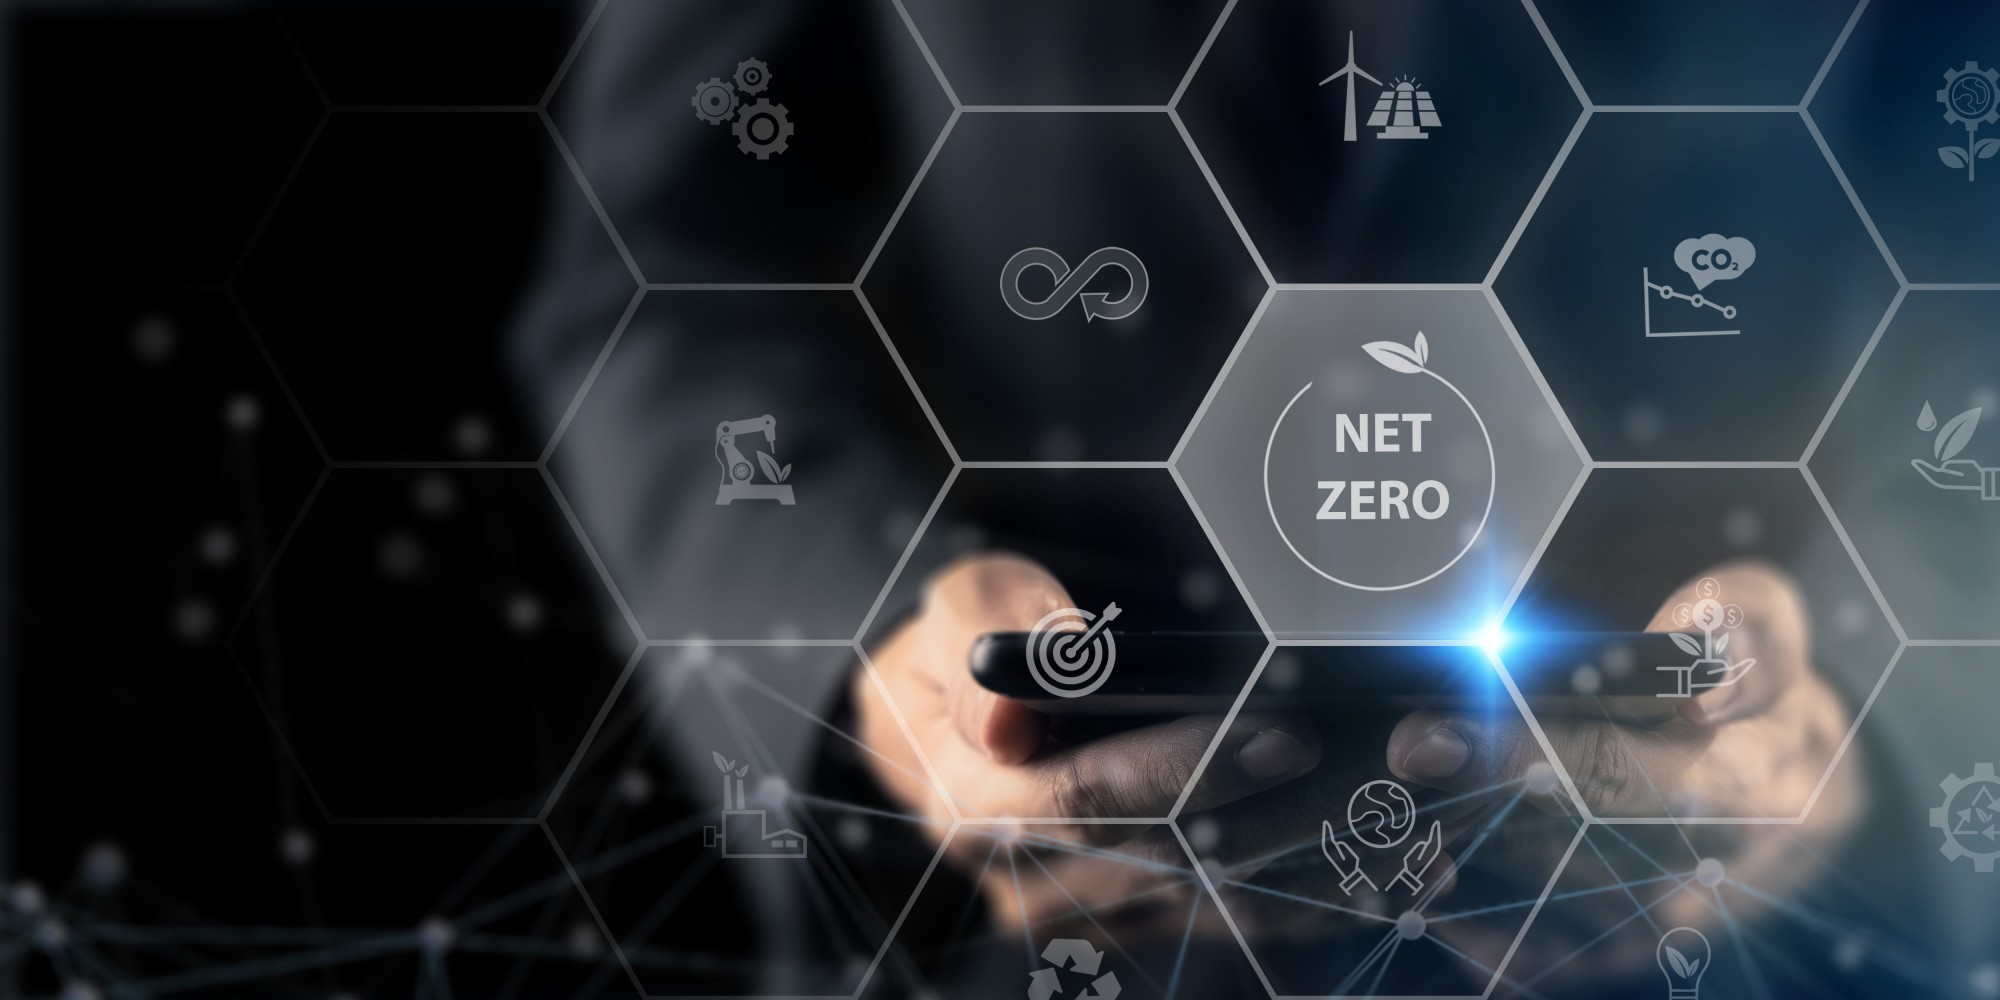 REI Co-Op’s Net Zero Targets Approved by SBTi